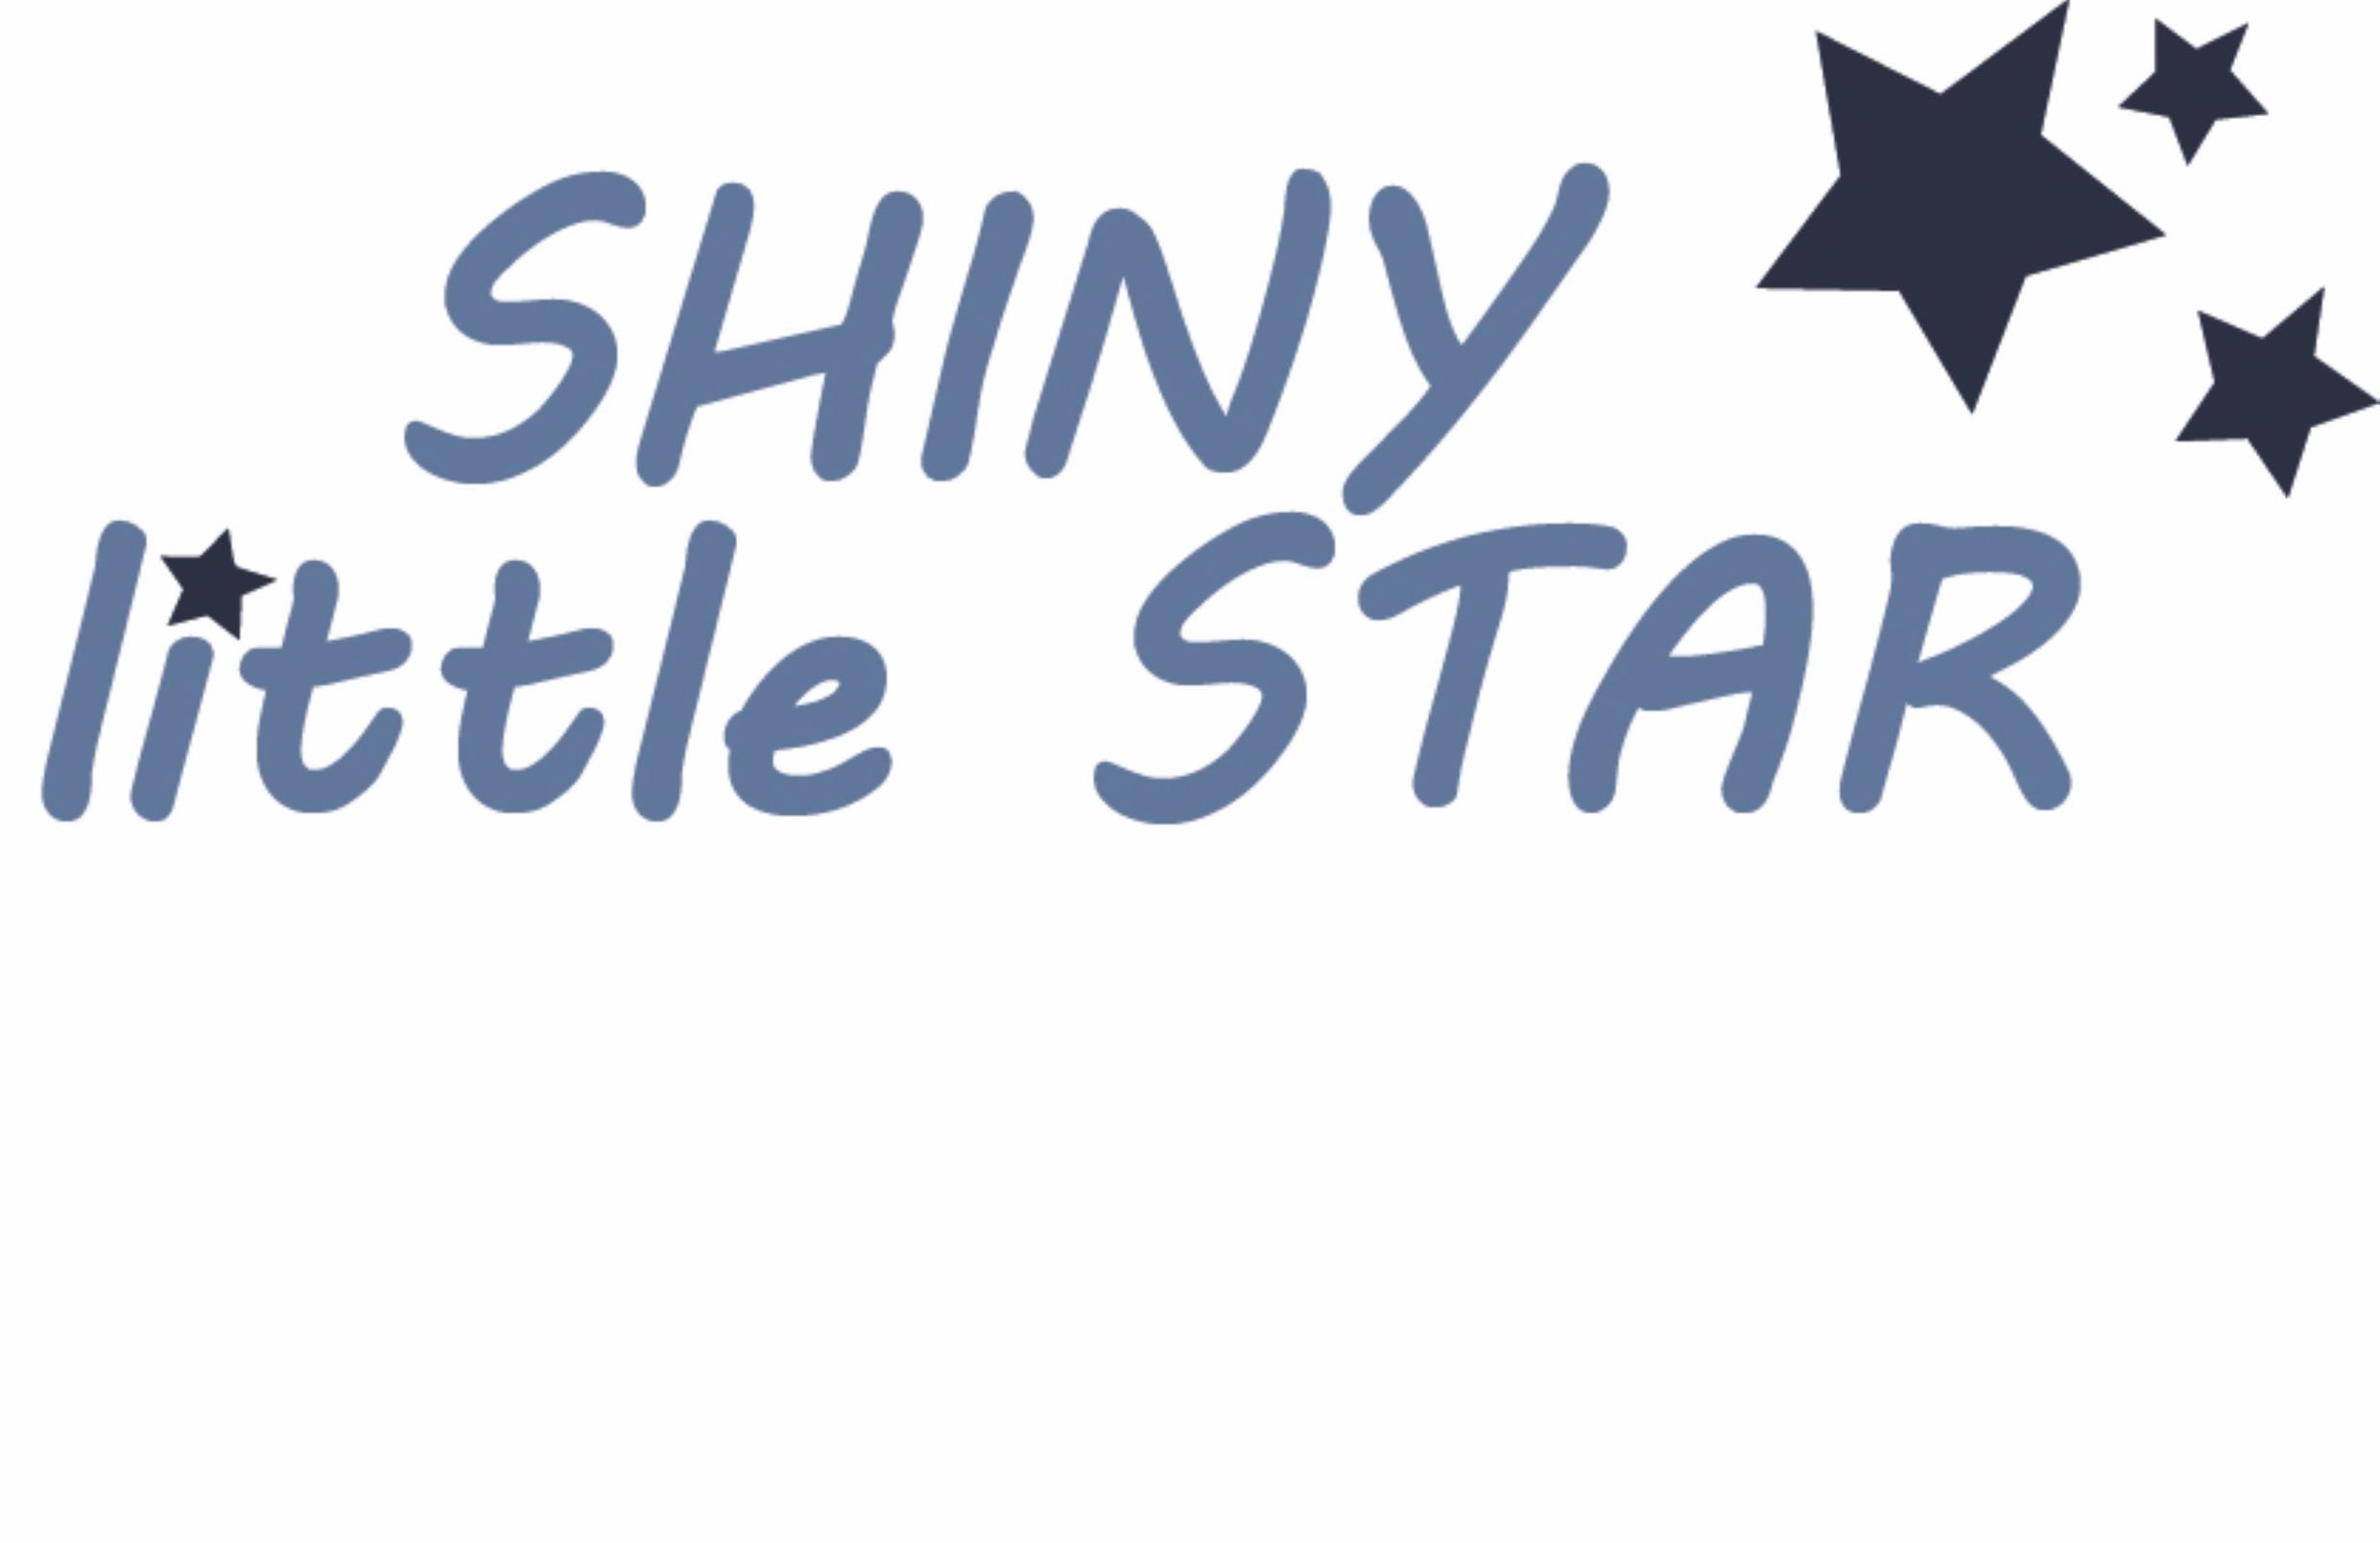 mit Druckknöpfen im Shiny Body Schritt Star (2-tlg) Liliput Little